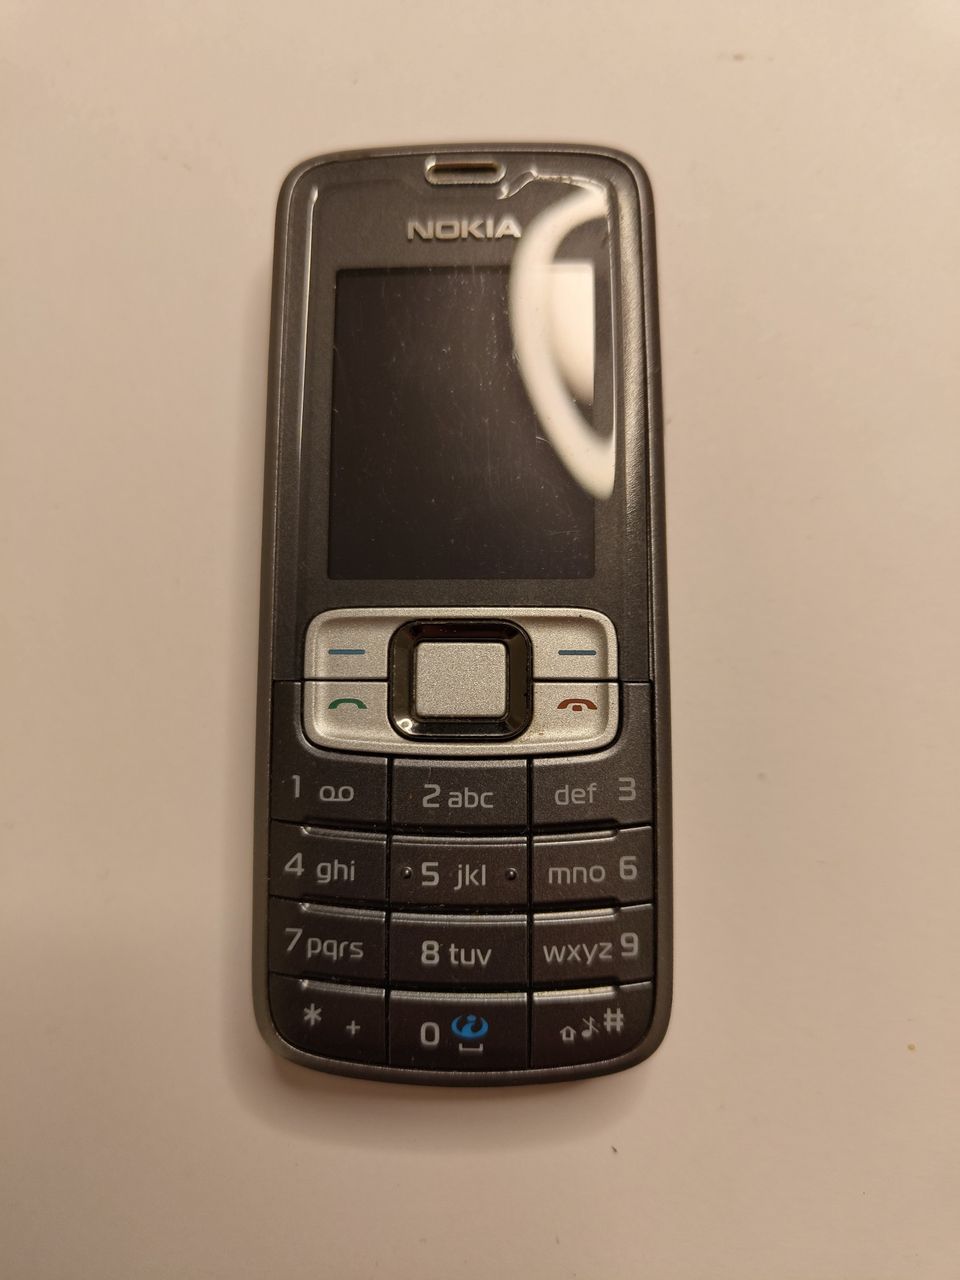 Nokia 3109c